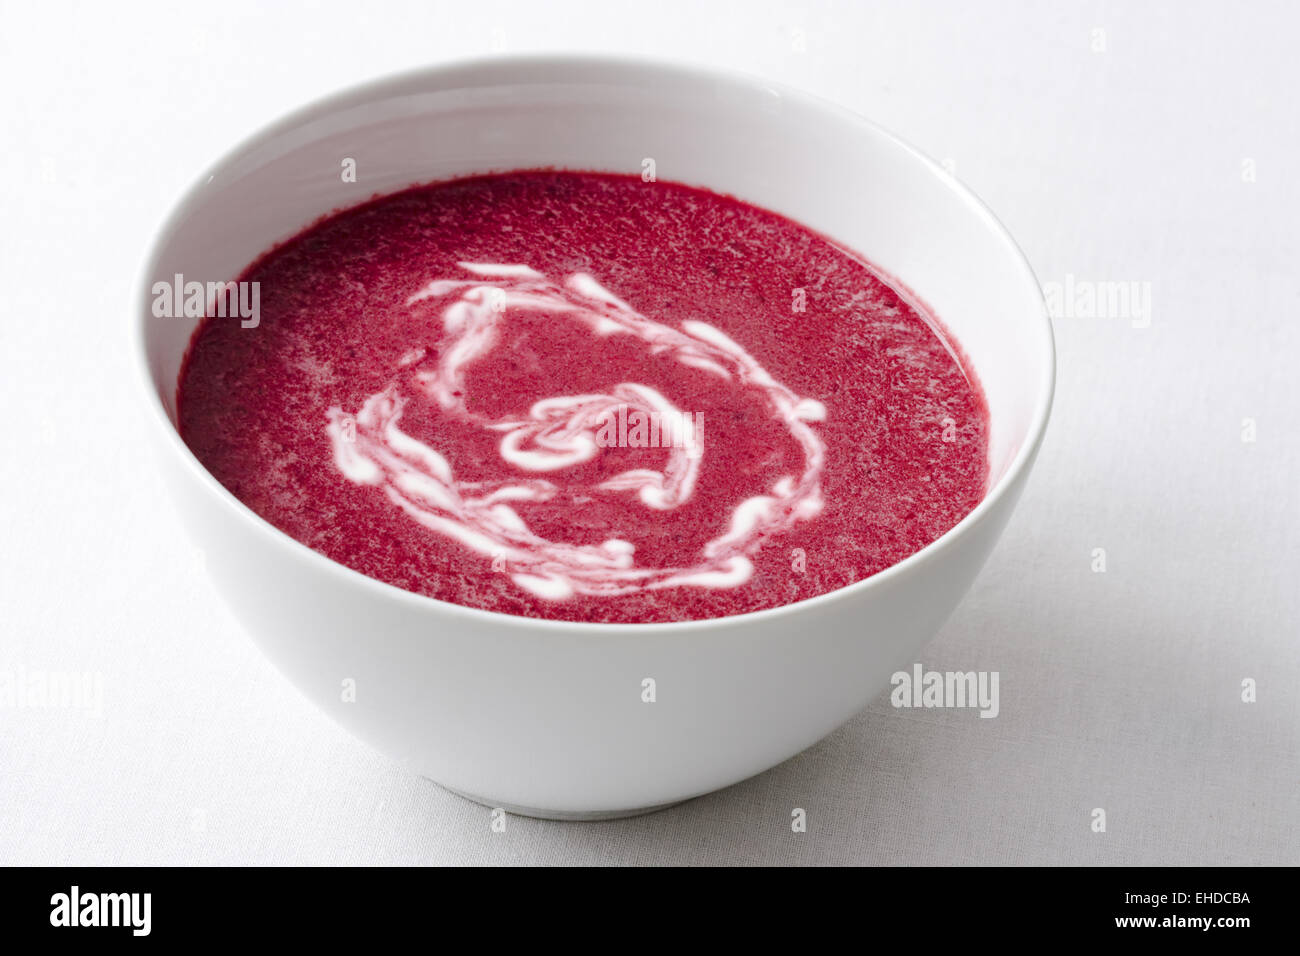 Rote Beete Suppe - zuppa di barbabietole Foto Stock